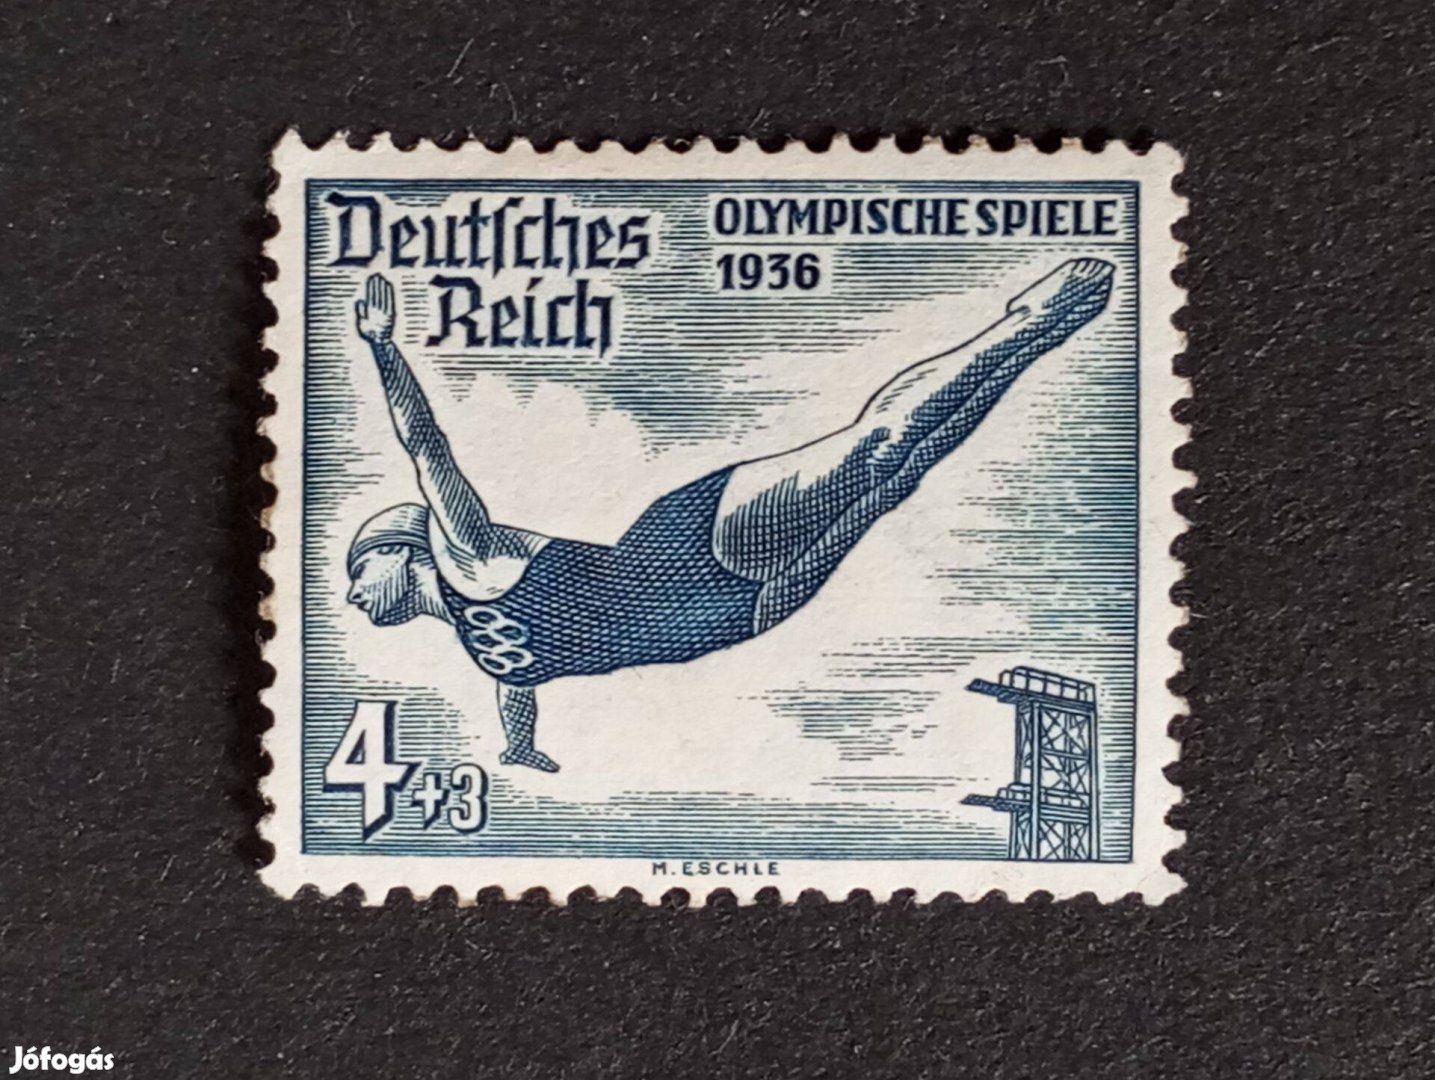 Deutsches Reich 4+3 Pfg. bélyeg 1936-os olimpiai játékok - Berlin .*